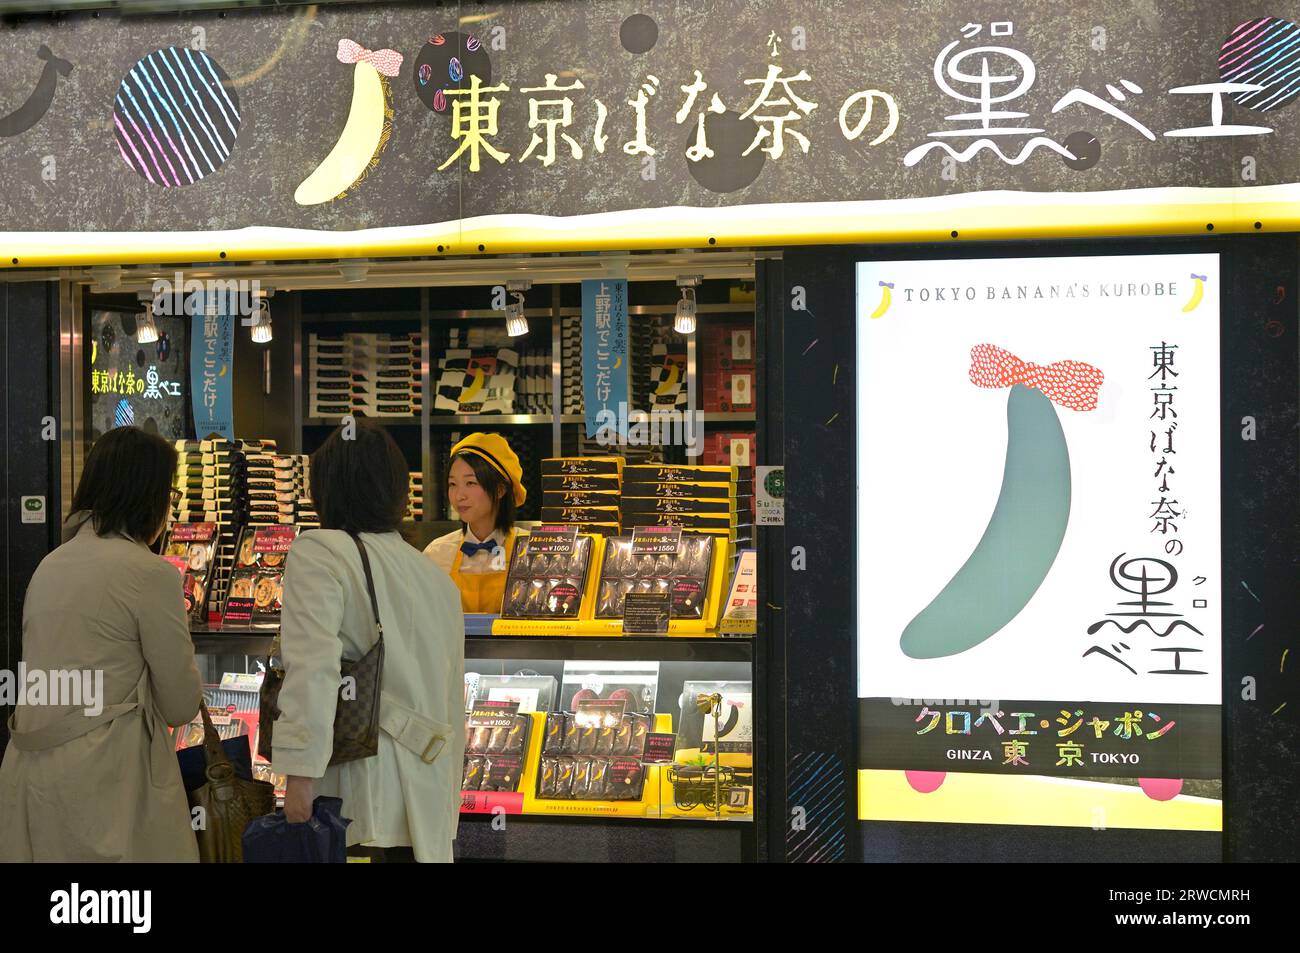 A Tokyo Banana store display in Asakusa, Tokyo JP Stock Photo